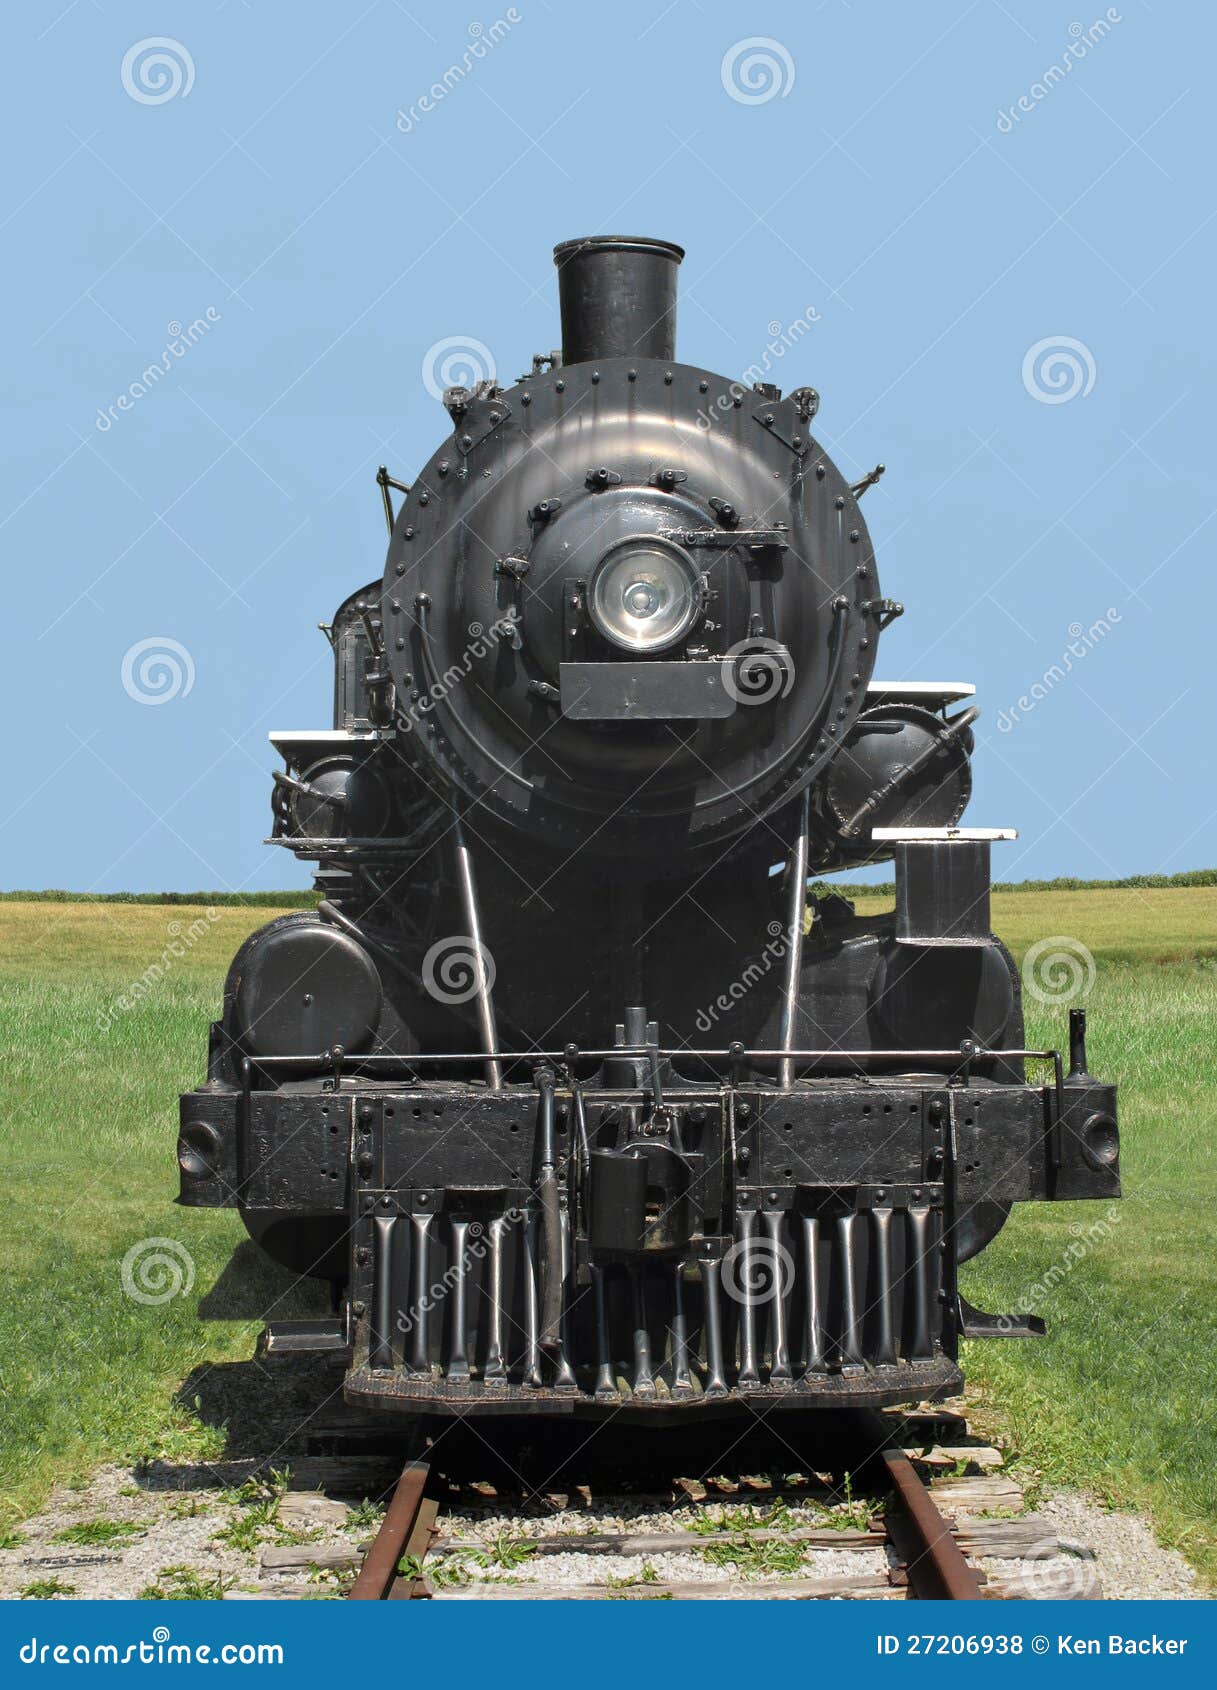 front view train steam locomotive.